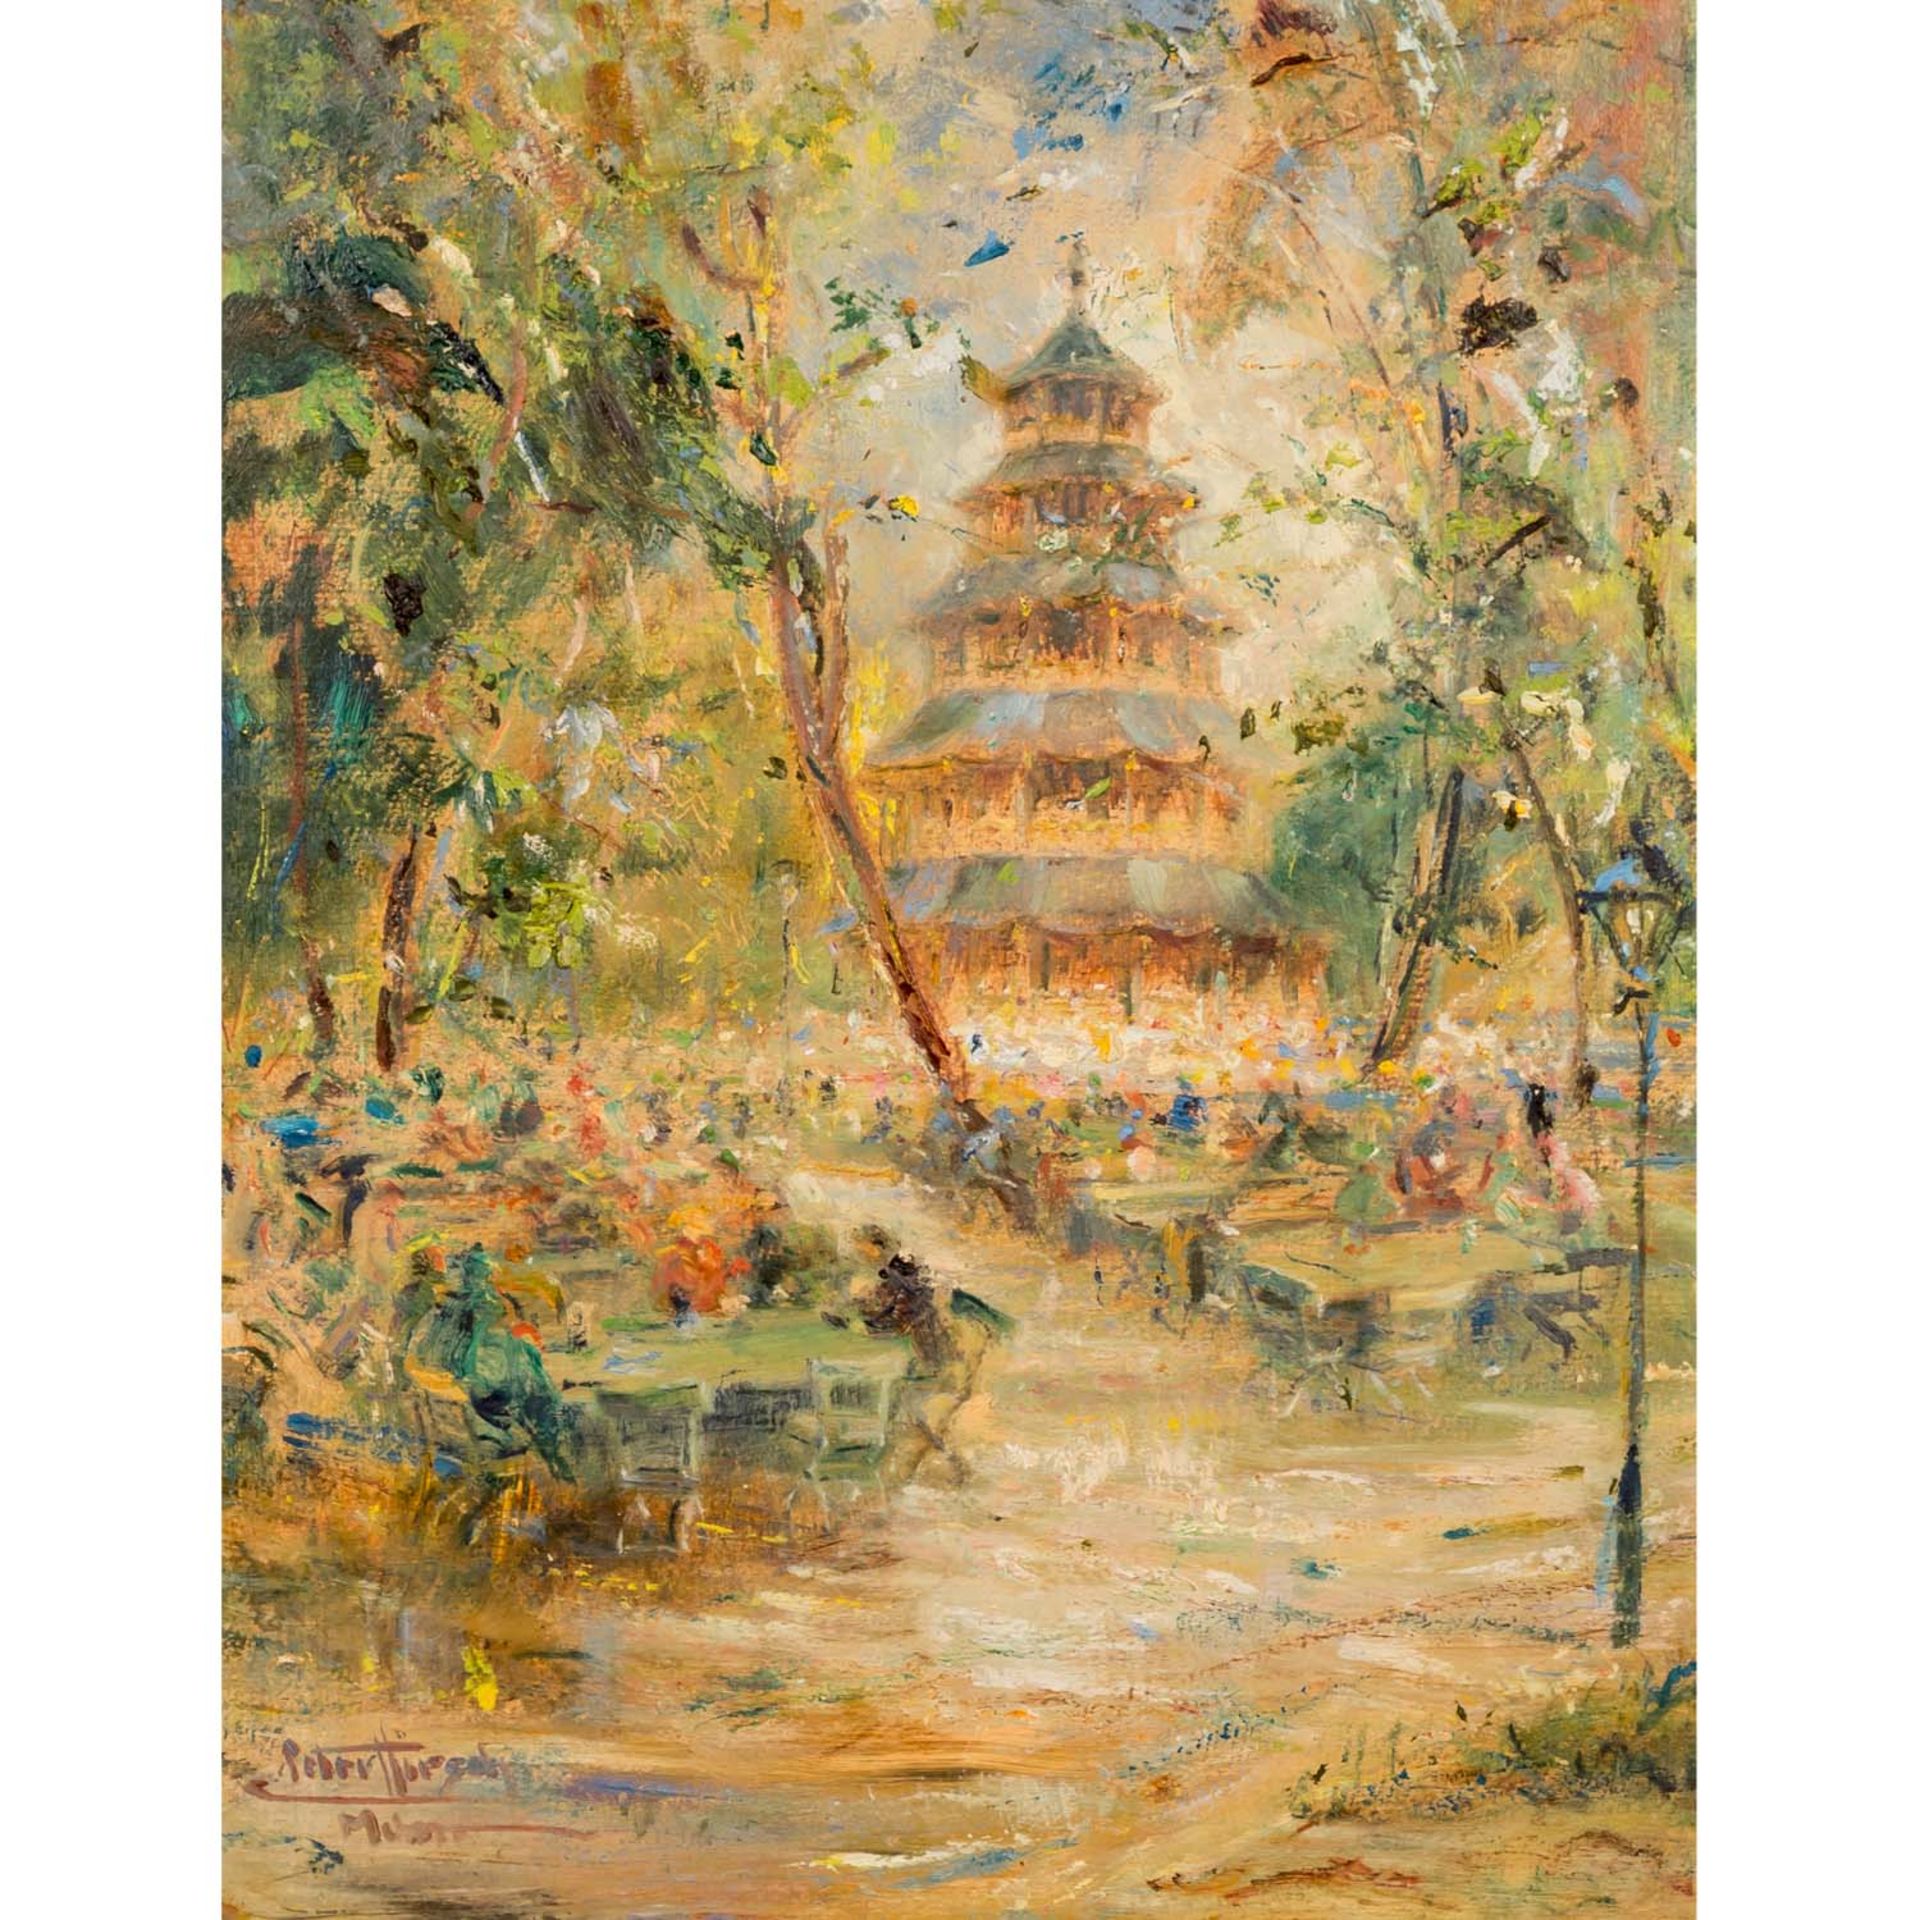 HIRSCH, PETER (1889-1978) "Chinesischer Turm im Englischen Garten"Öl auf Karton, sign